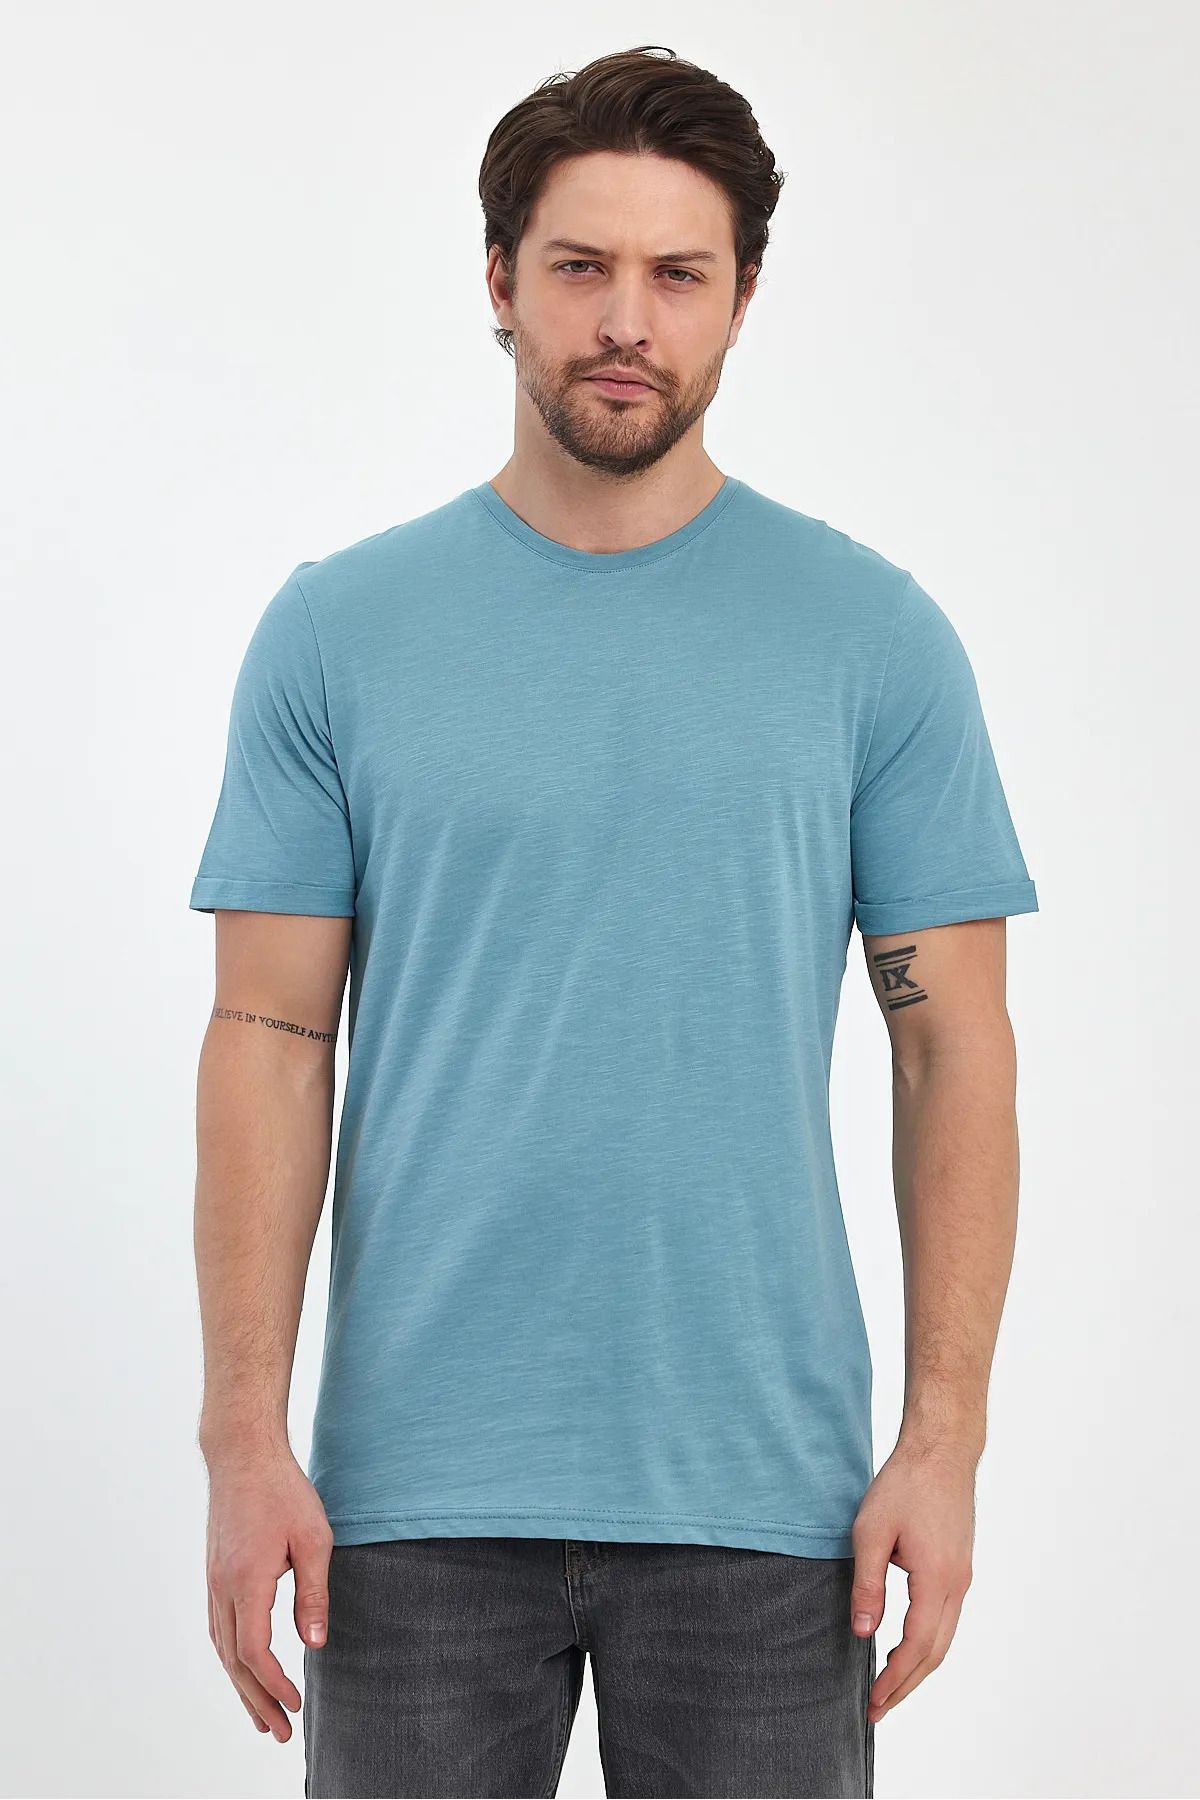 Rodi Jeans Erkek Açık Mavi Bisiklet Yaka Rahat Kalıp Baskısız Pamuk T-Shirt